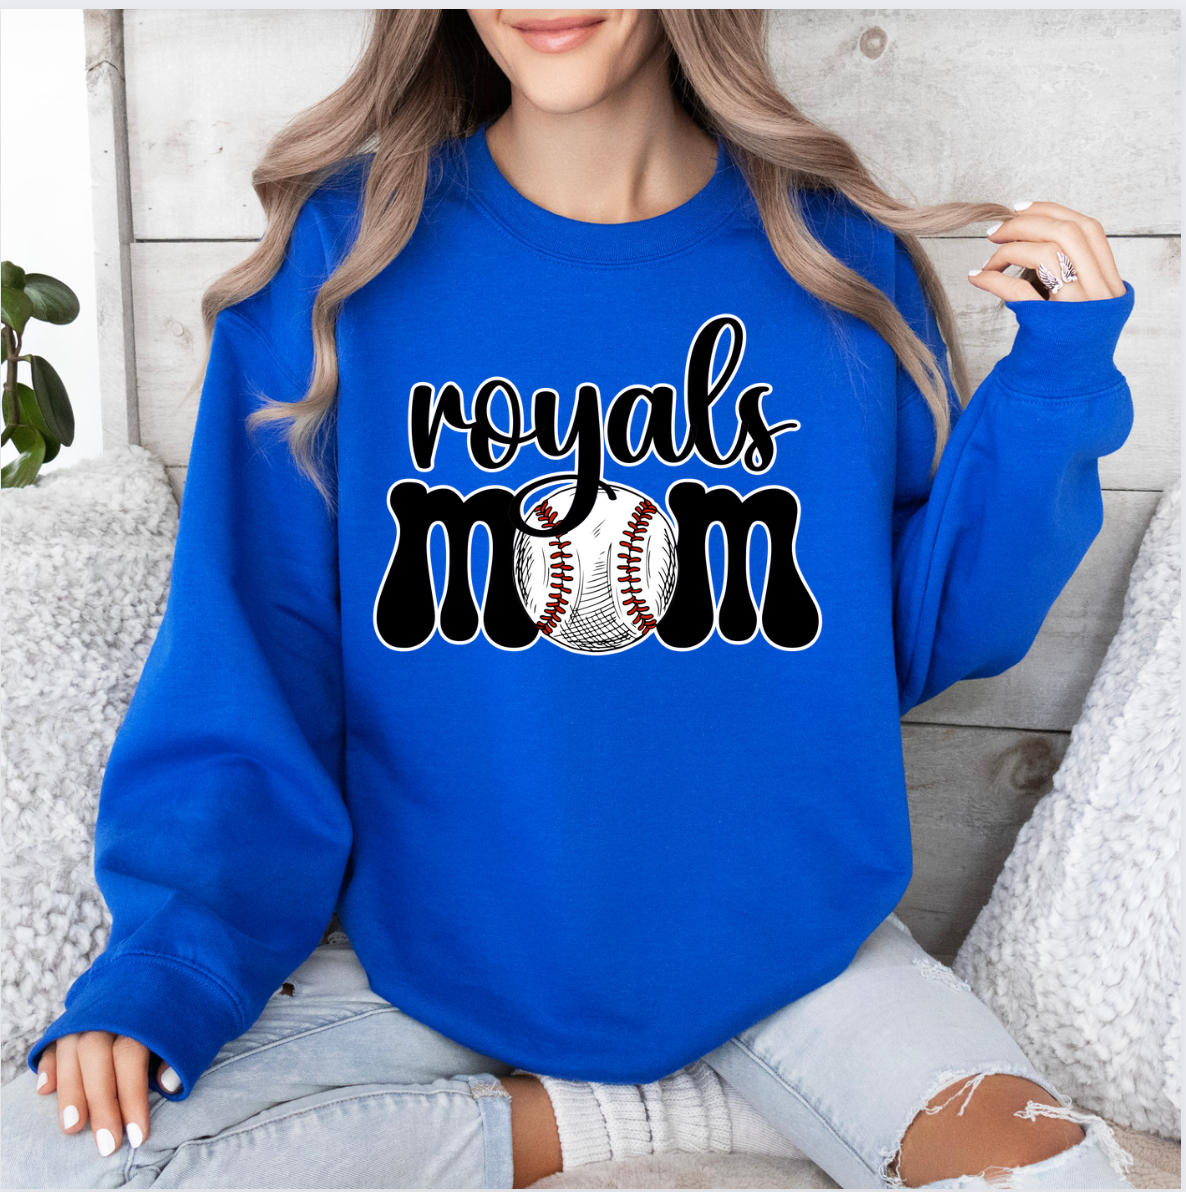 Royals Mom Crew